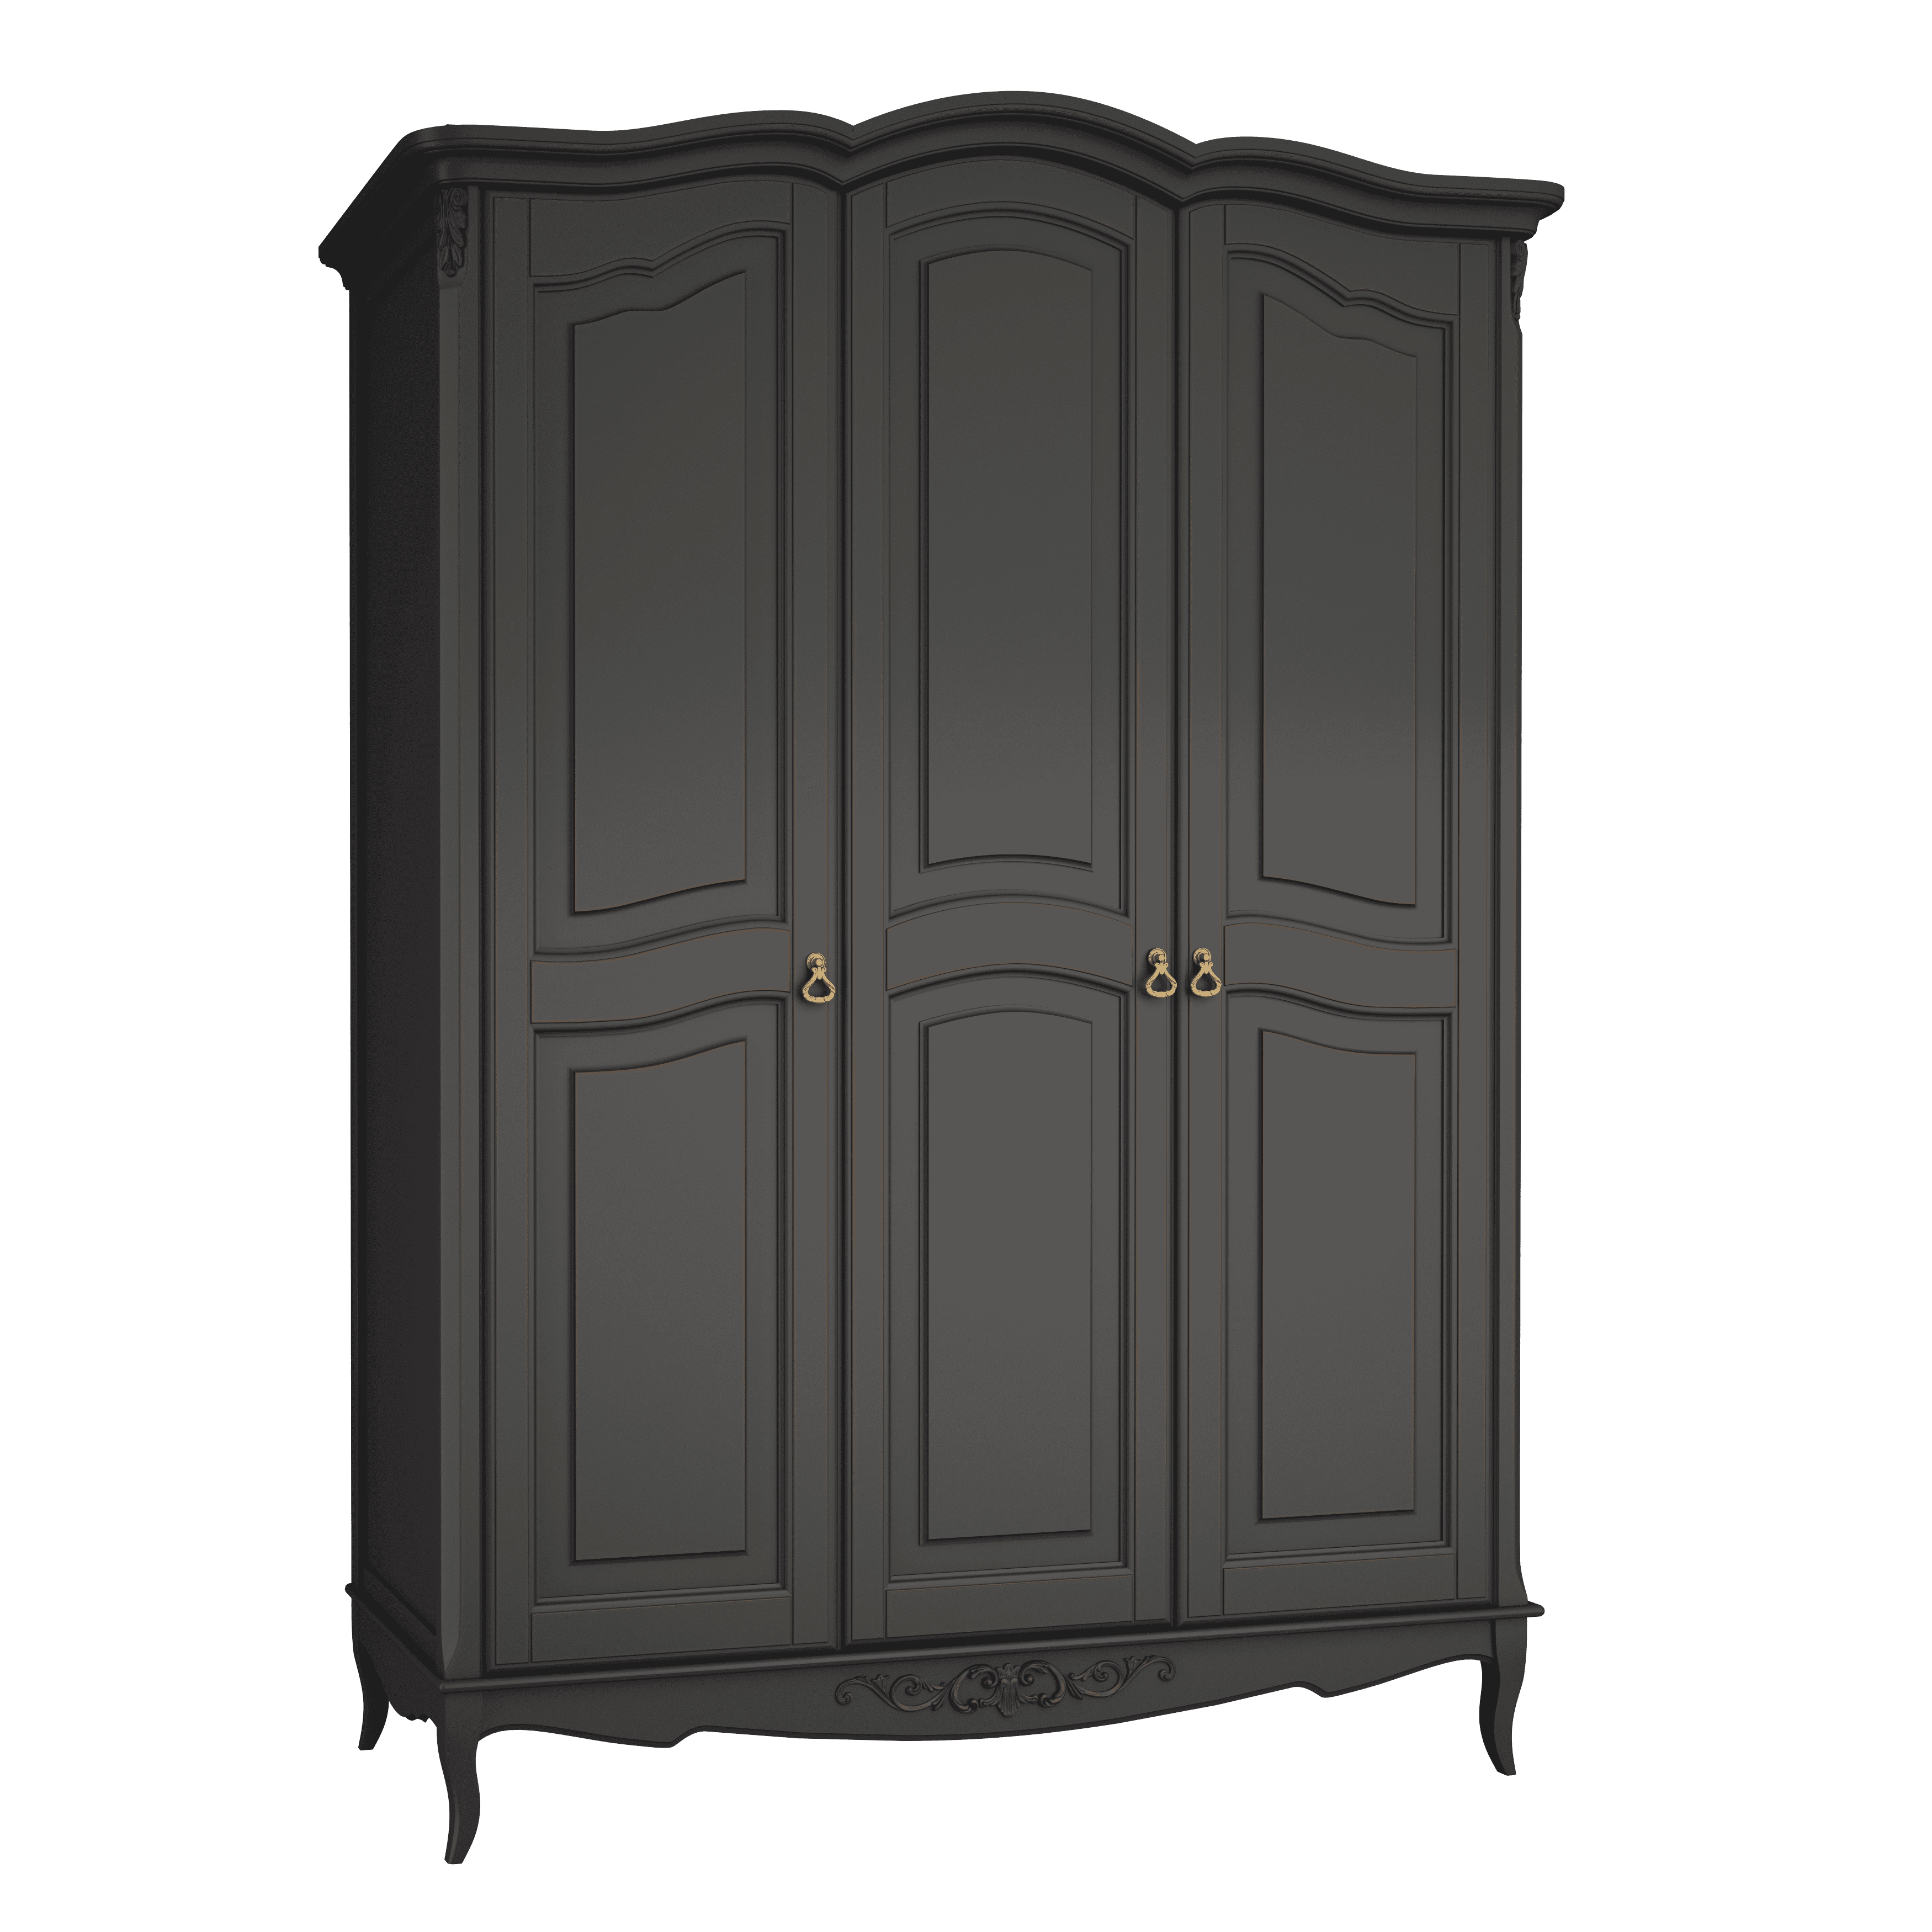 Шкаф платяной Aletan Provence, 3-х дверный, цвет: черный, размер 162х66х223 (B803BL)B803BL